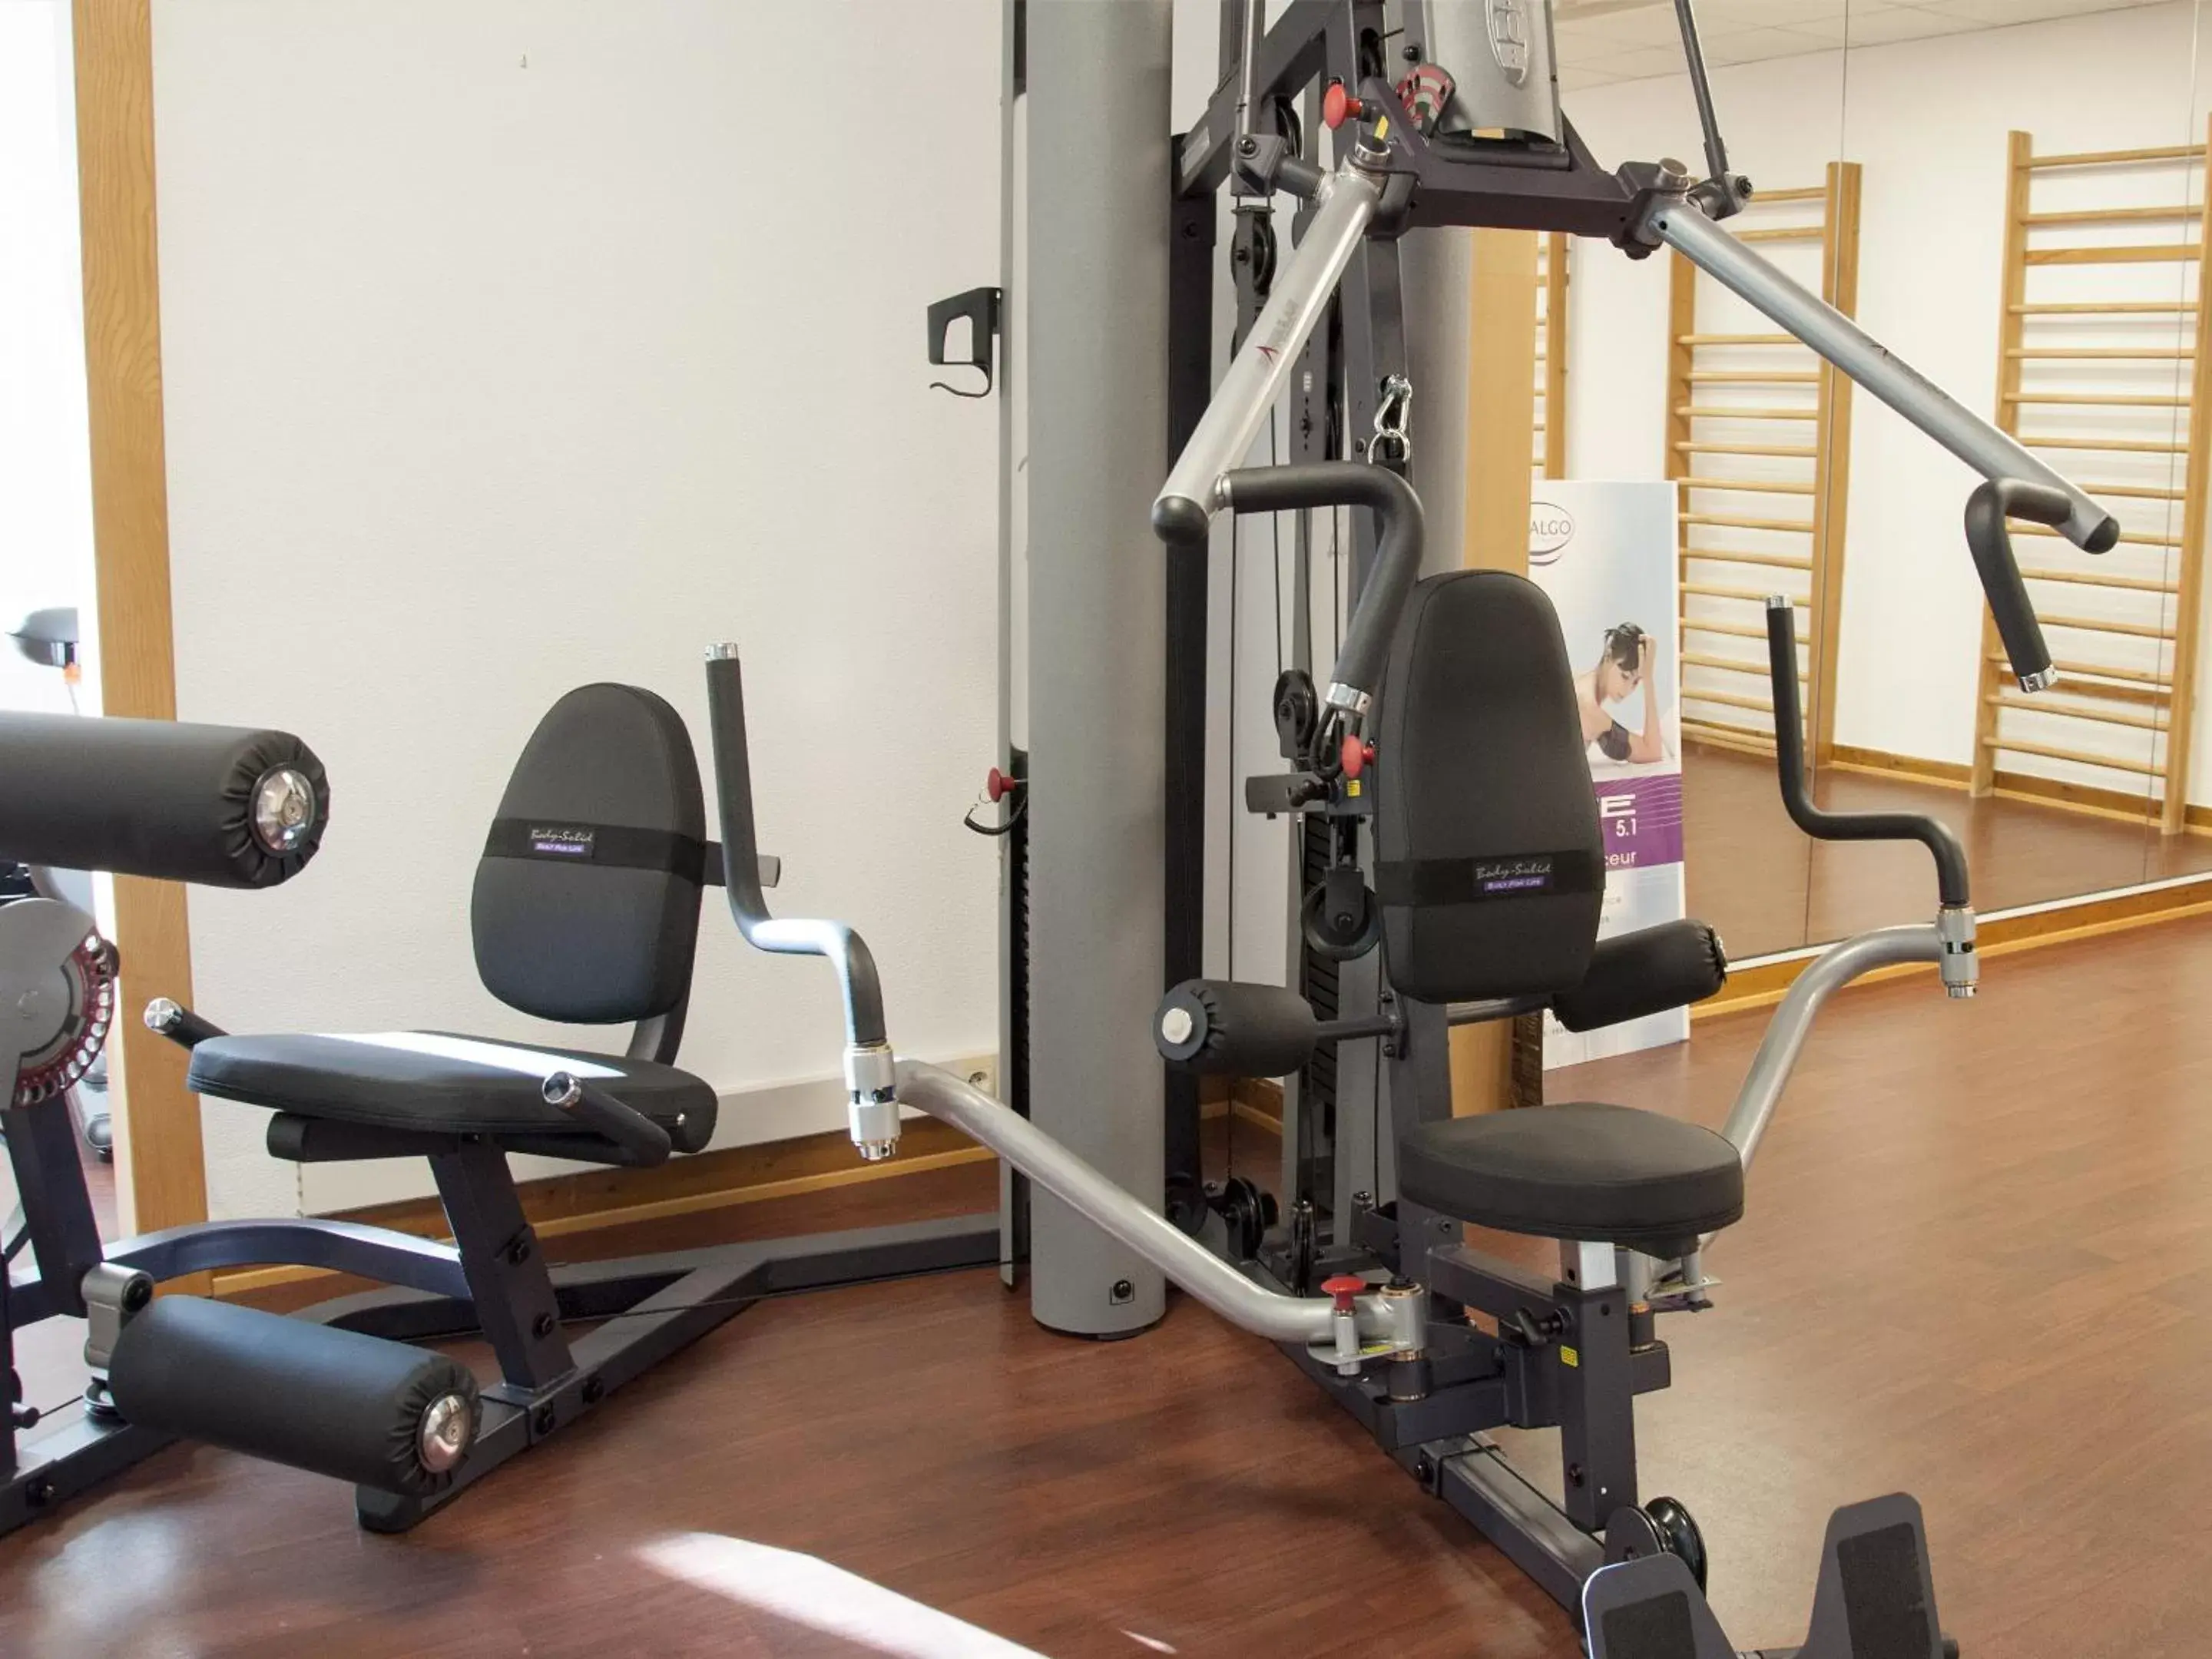 Fitness centre/facilities, Fitness Center/Facilities in Hotel Restaurant & Spa Verte Vallée